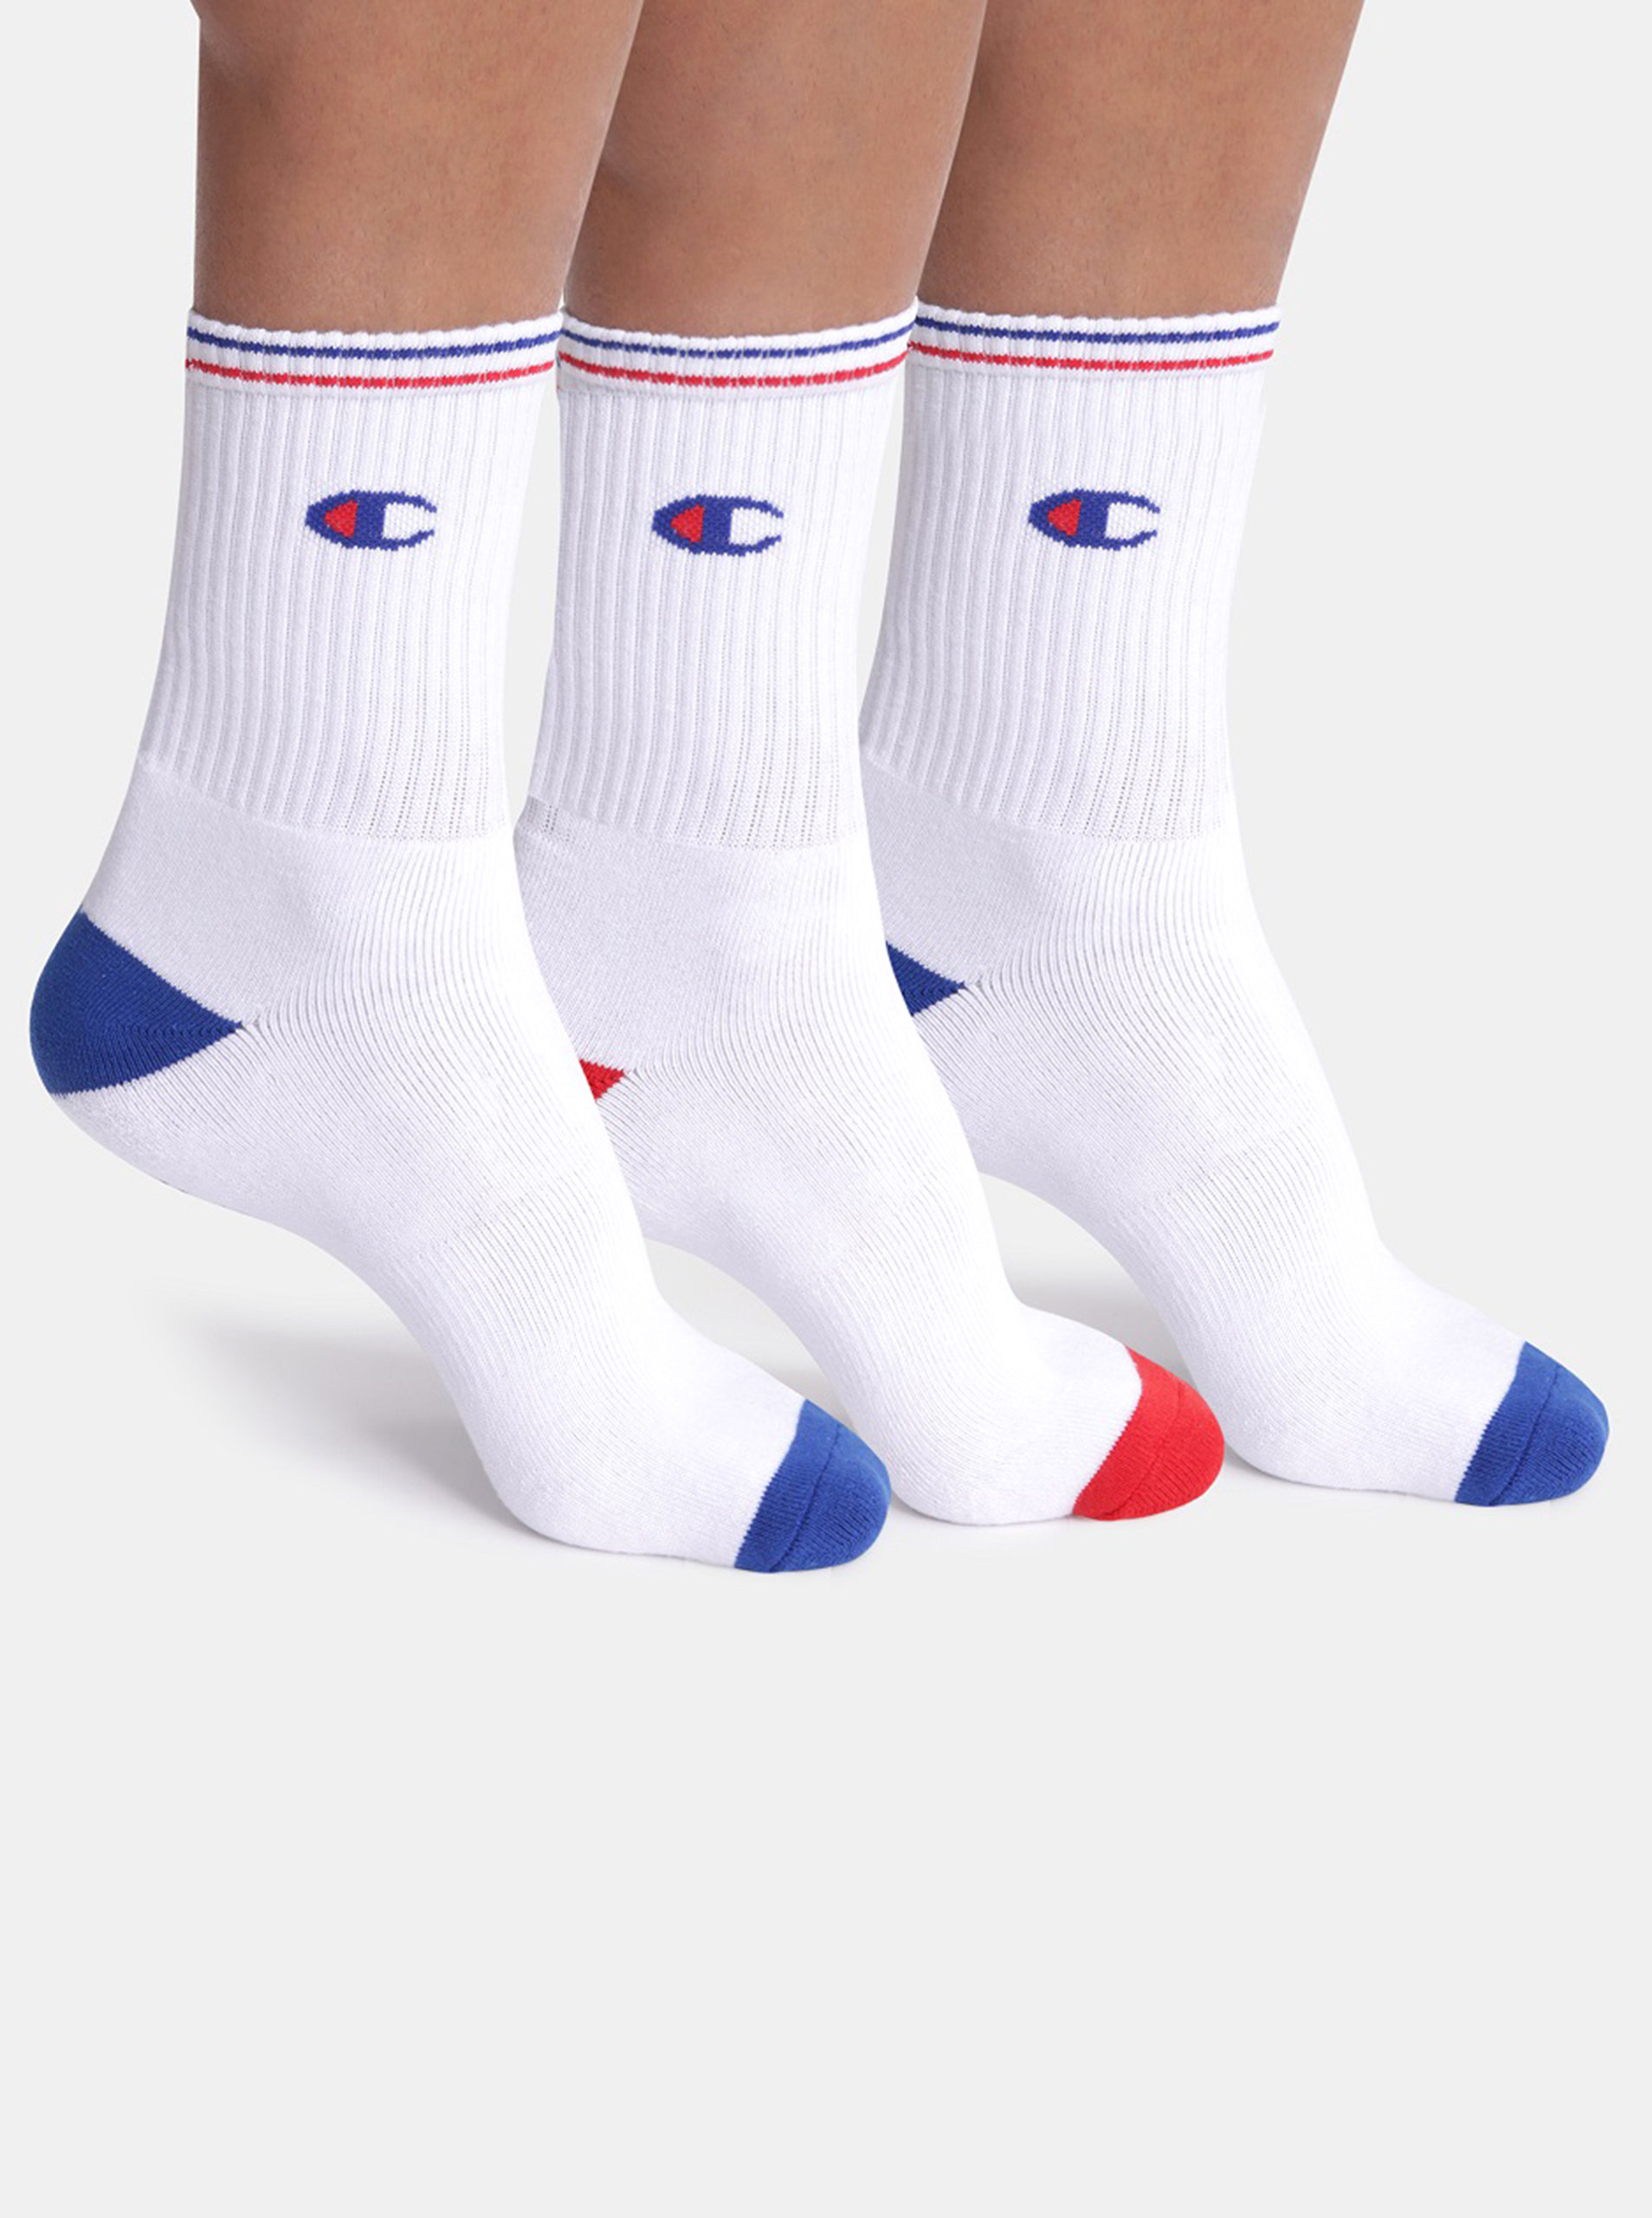 CREW SOCKS PERFORMANCE 3x - Sportovní ponožky 3 páry s logem Champion - bílá - červená - modrá